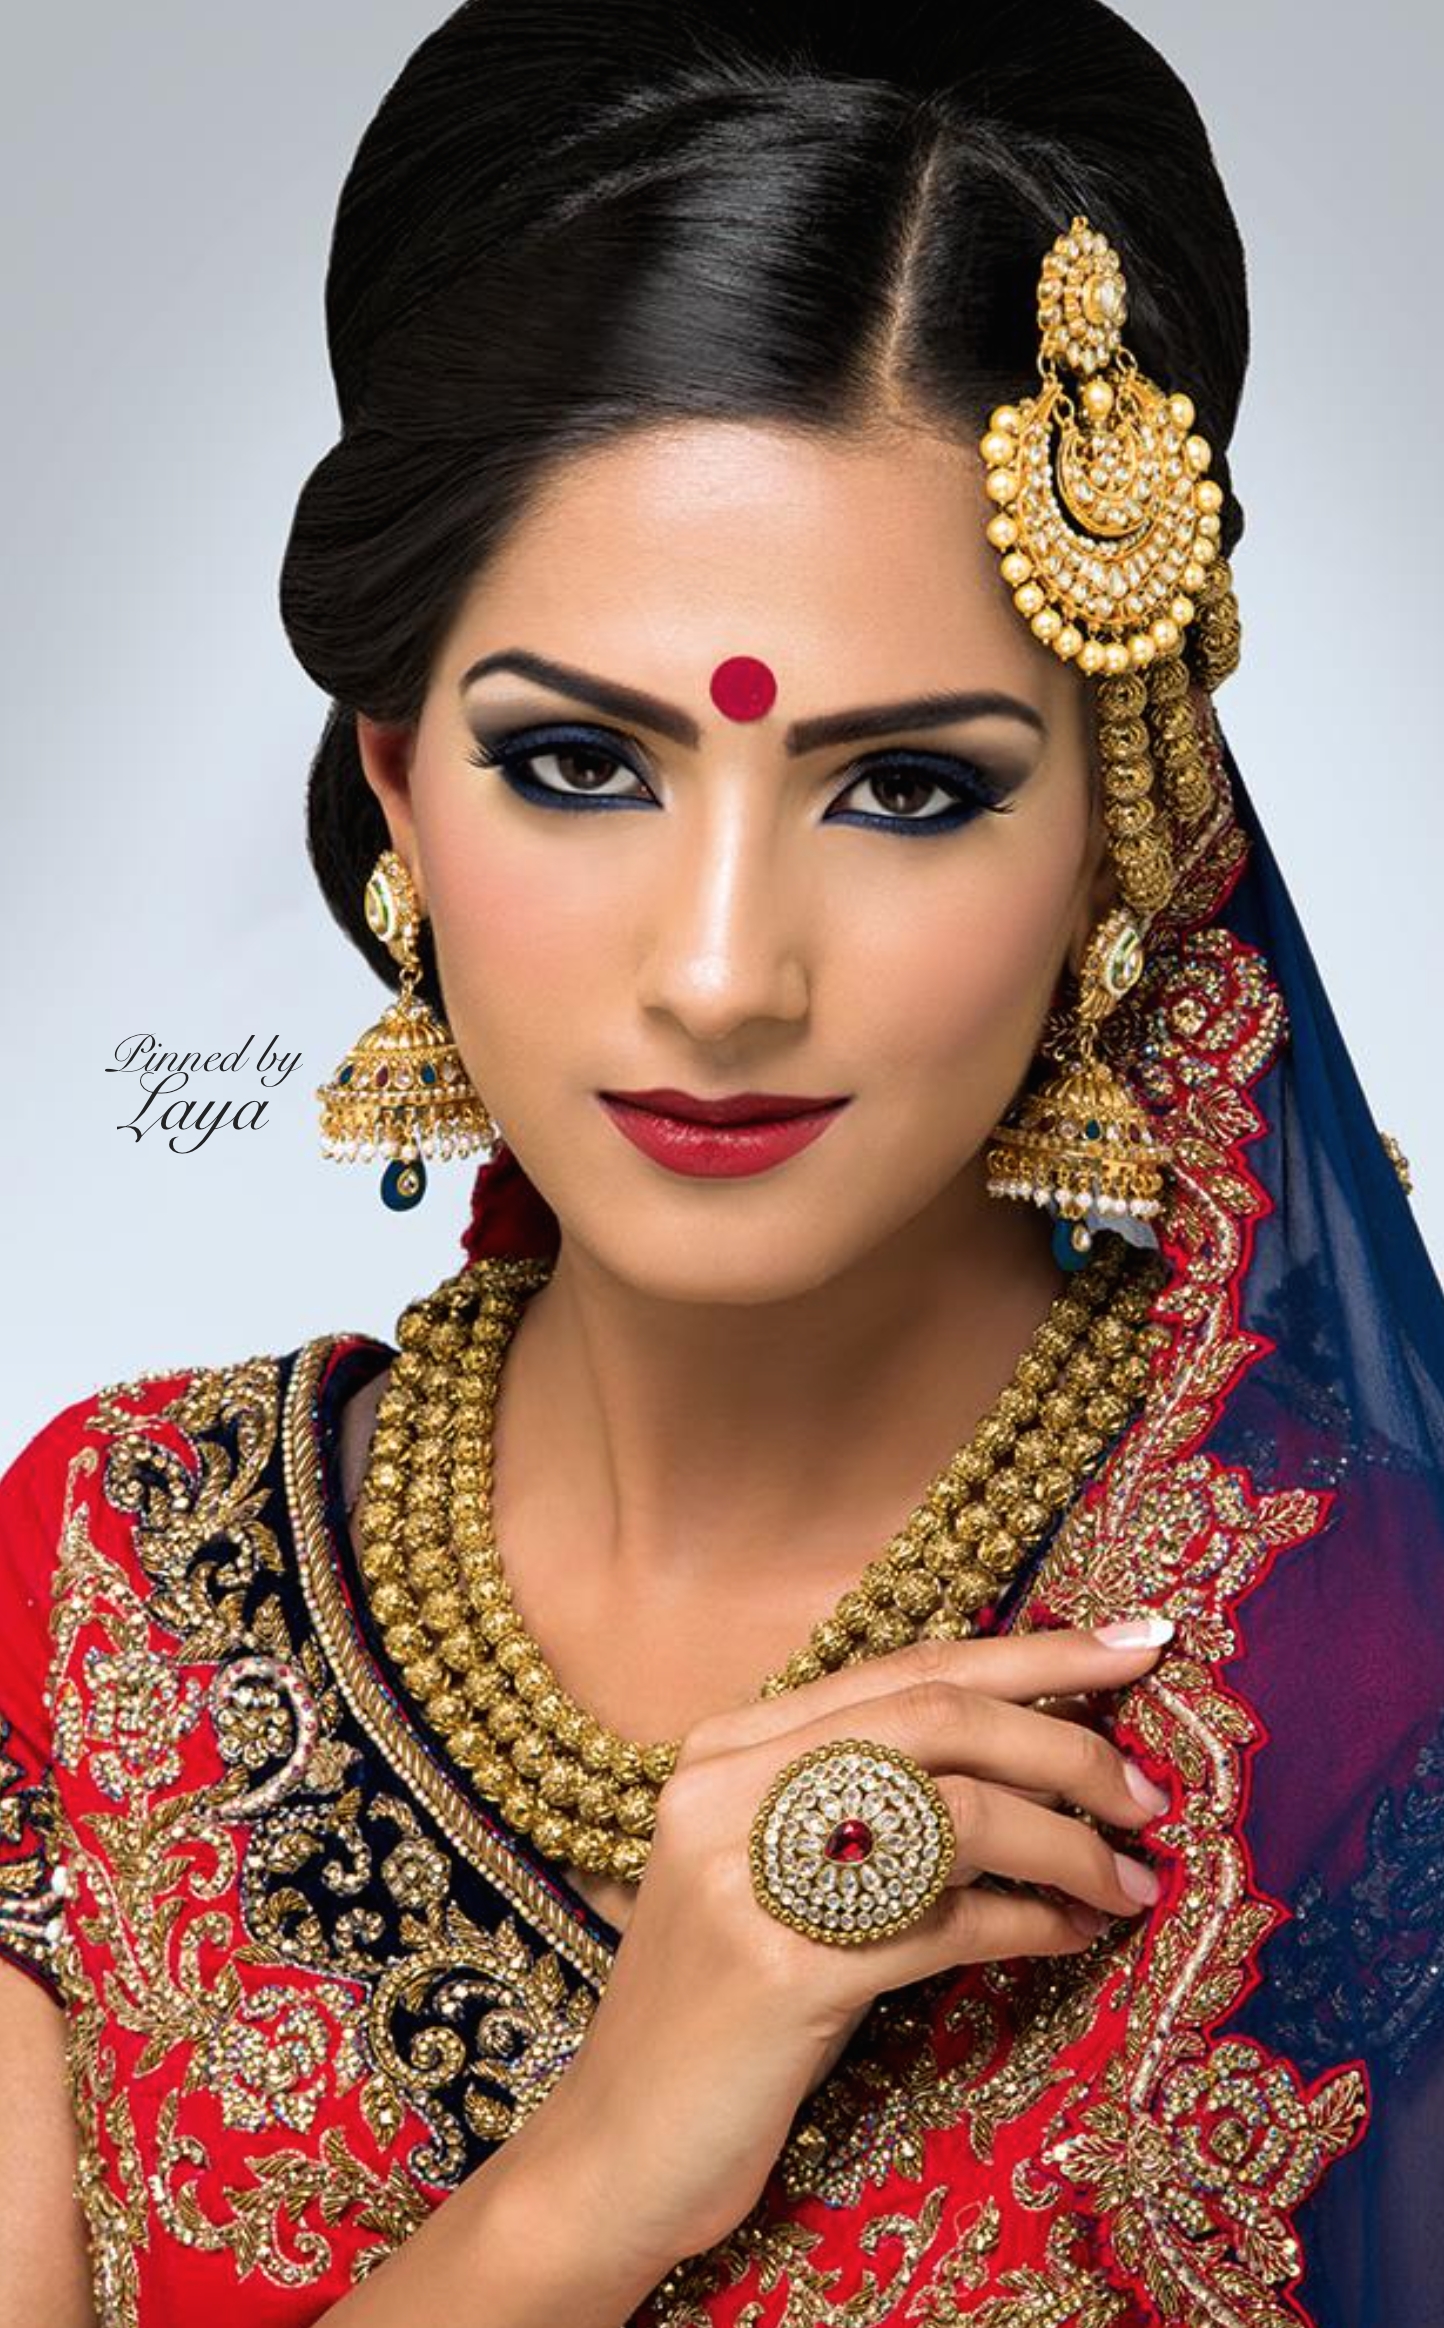 Indian Bridal Hair And Makeup Hertfordshire Wavy Haircut